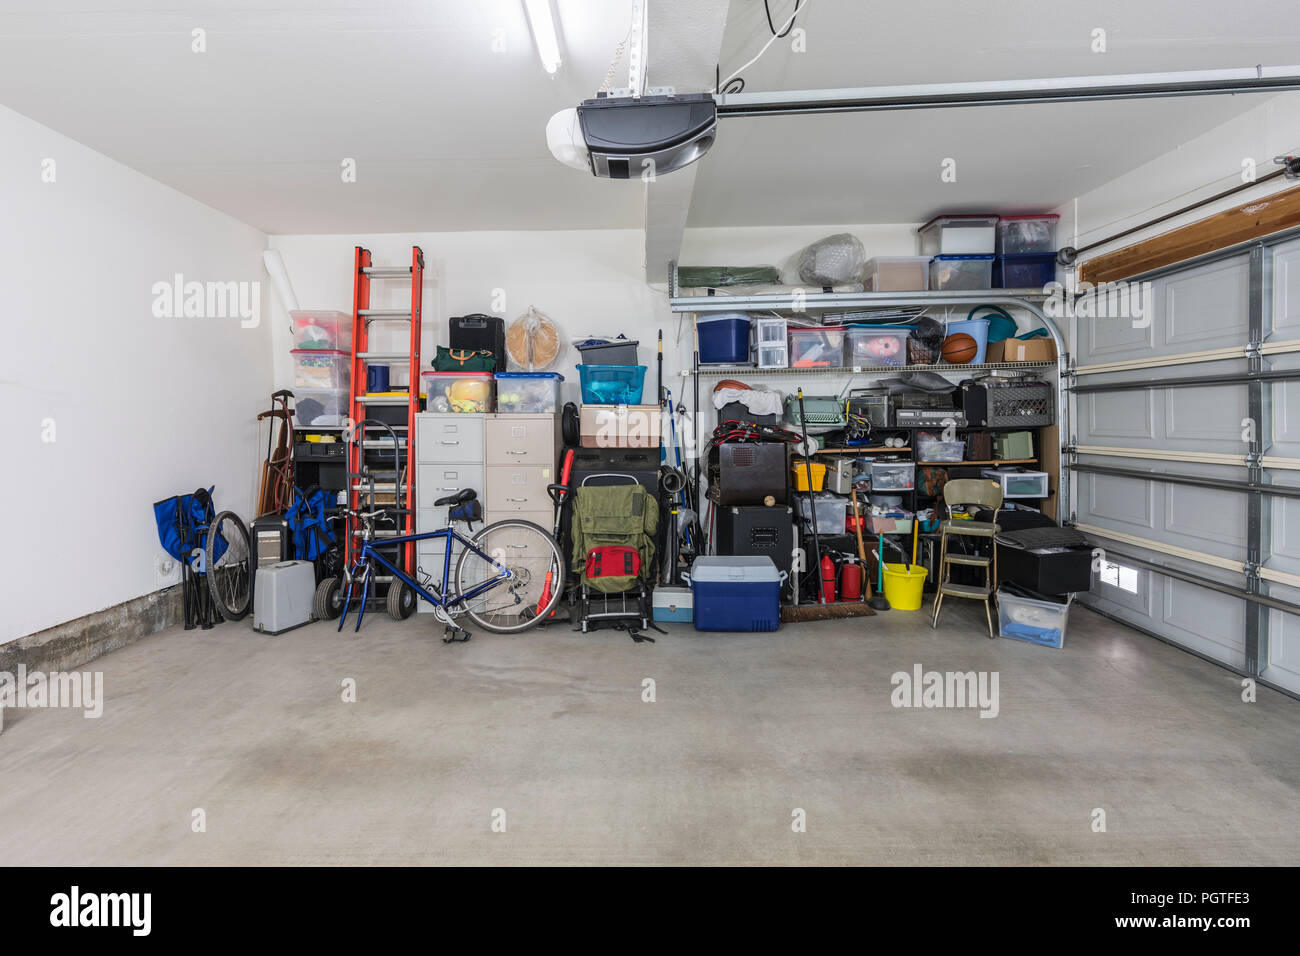 Überladen aber organisierte sauber vorstädtischen Wohnviertel Garage für zwei Autos mit Werkzeugen, Aktenschränke und Sportgeräte. Stockfoto